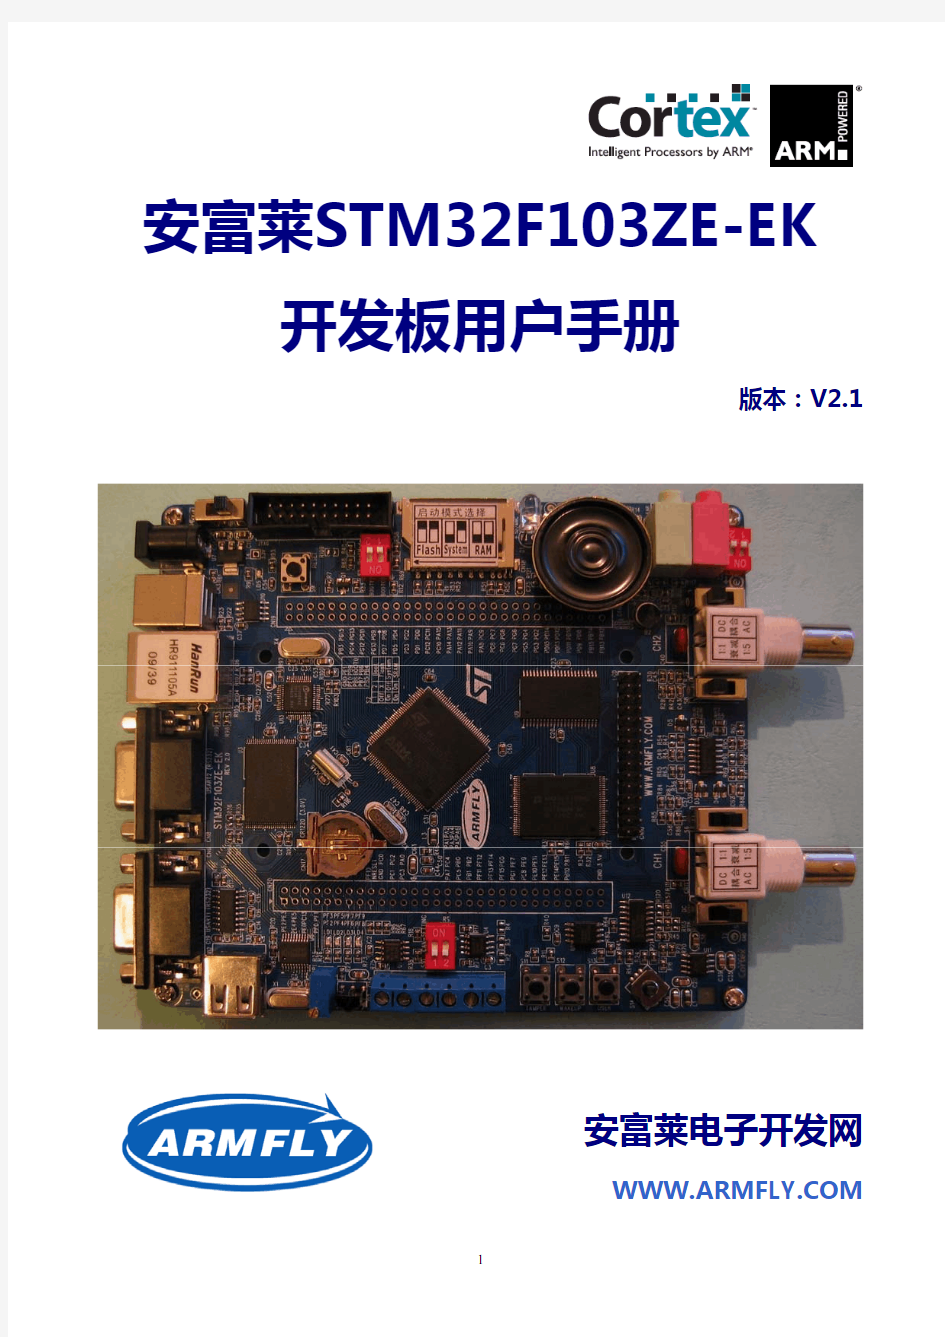 安富莱STM32F103ZE-EK开发板用户手册(V2.1)